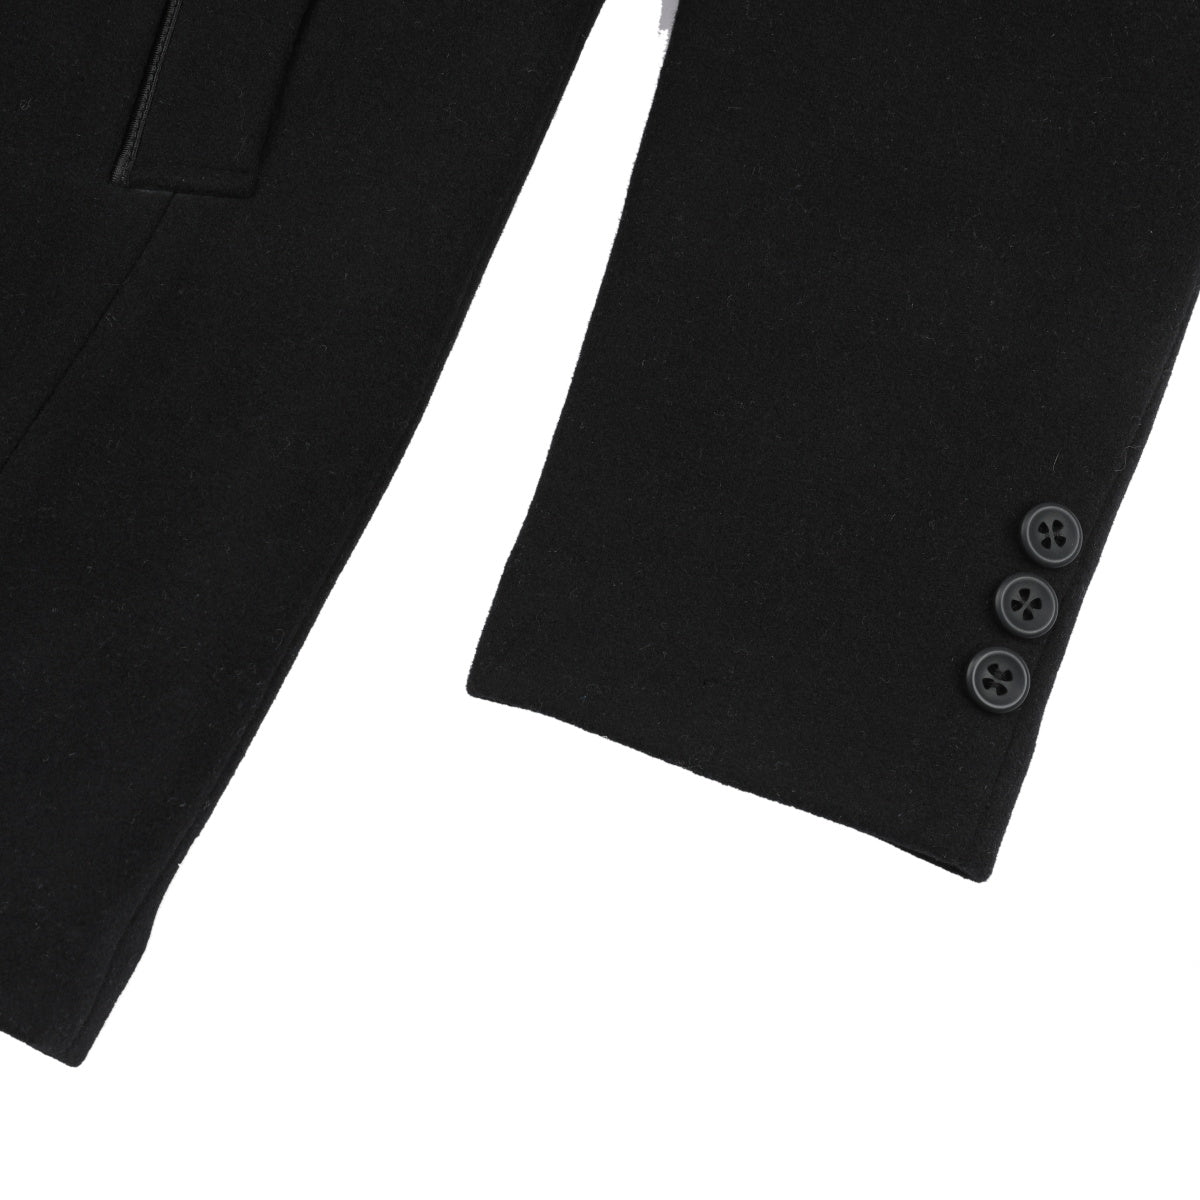 Men's Lapel Two Button Coat Black